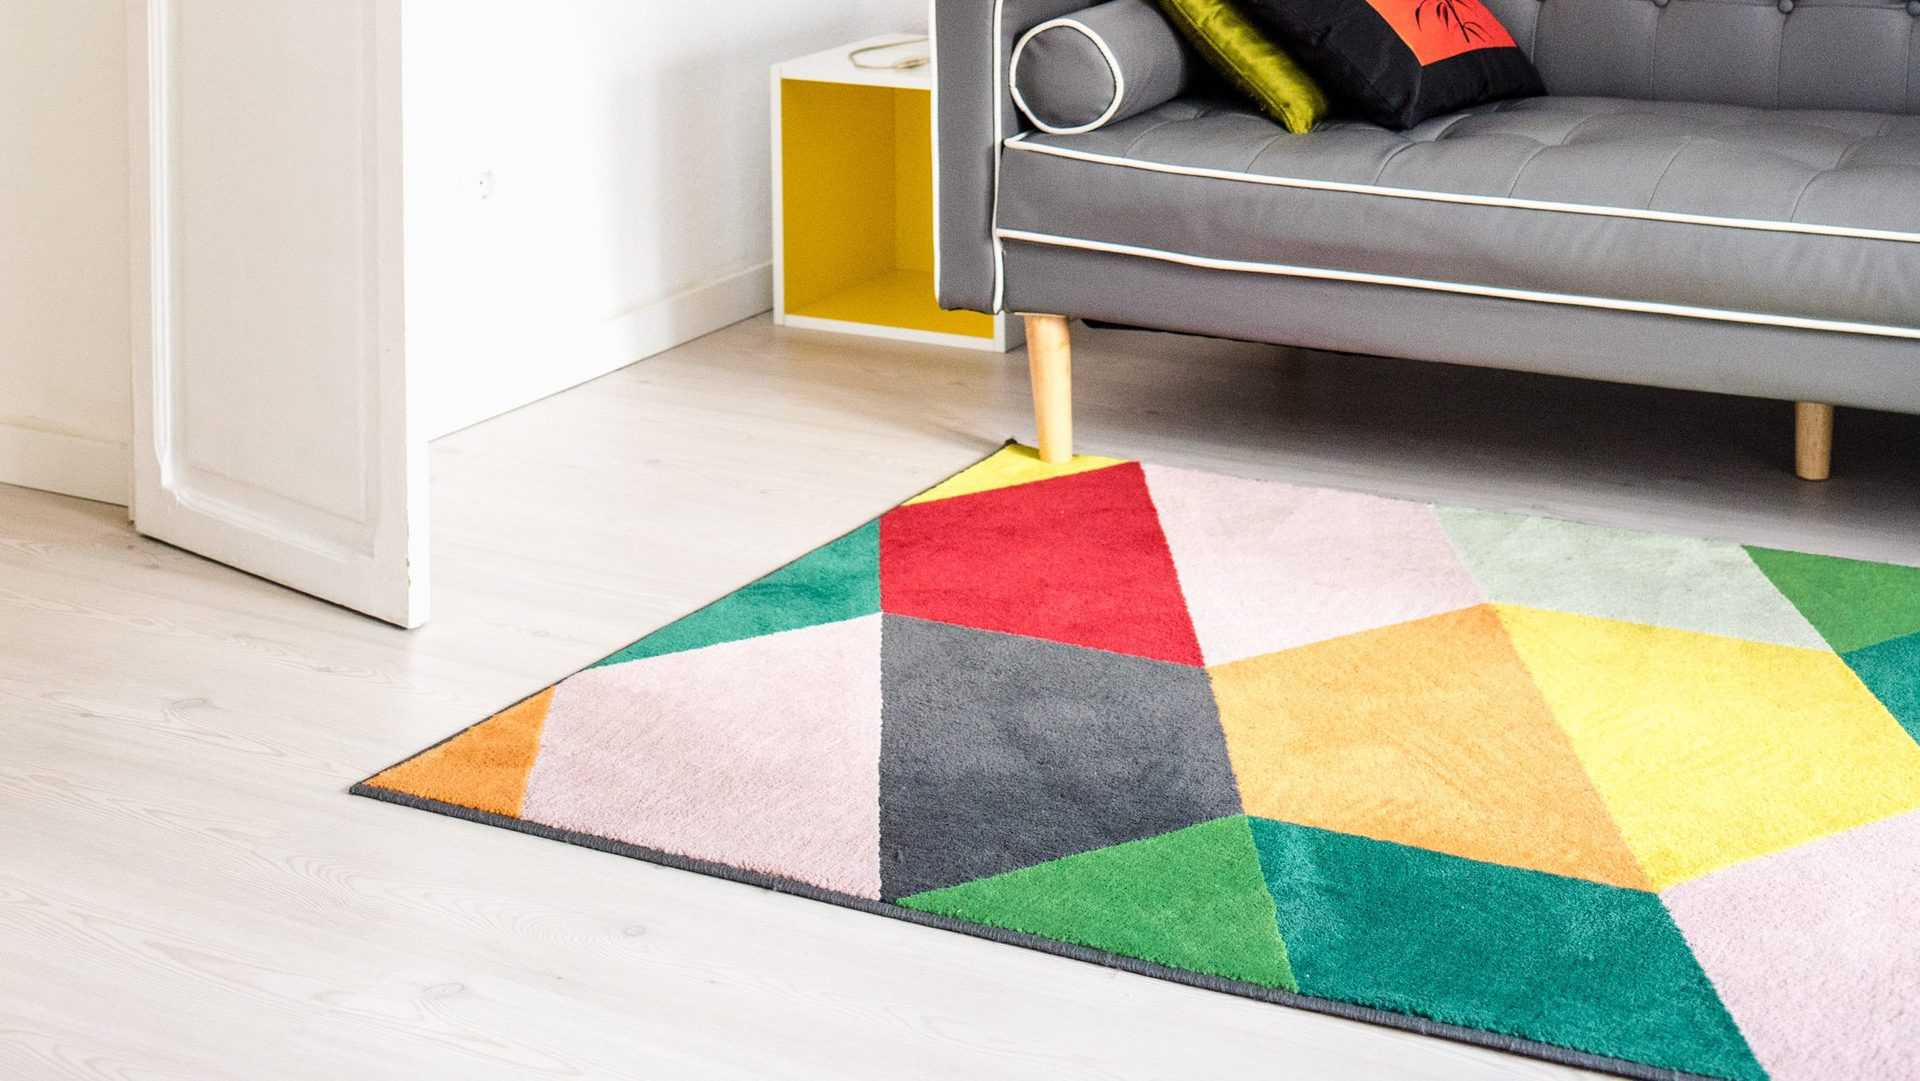 gekleurd tapijt op licht houten vloer in woonkamer met grijze bank